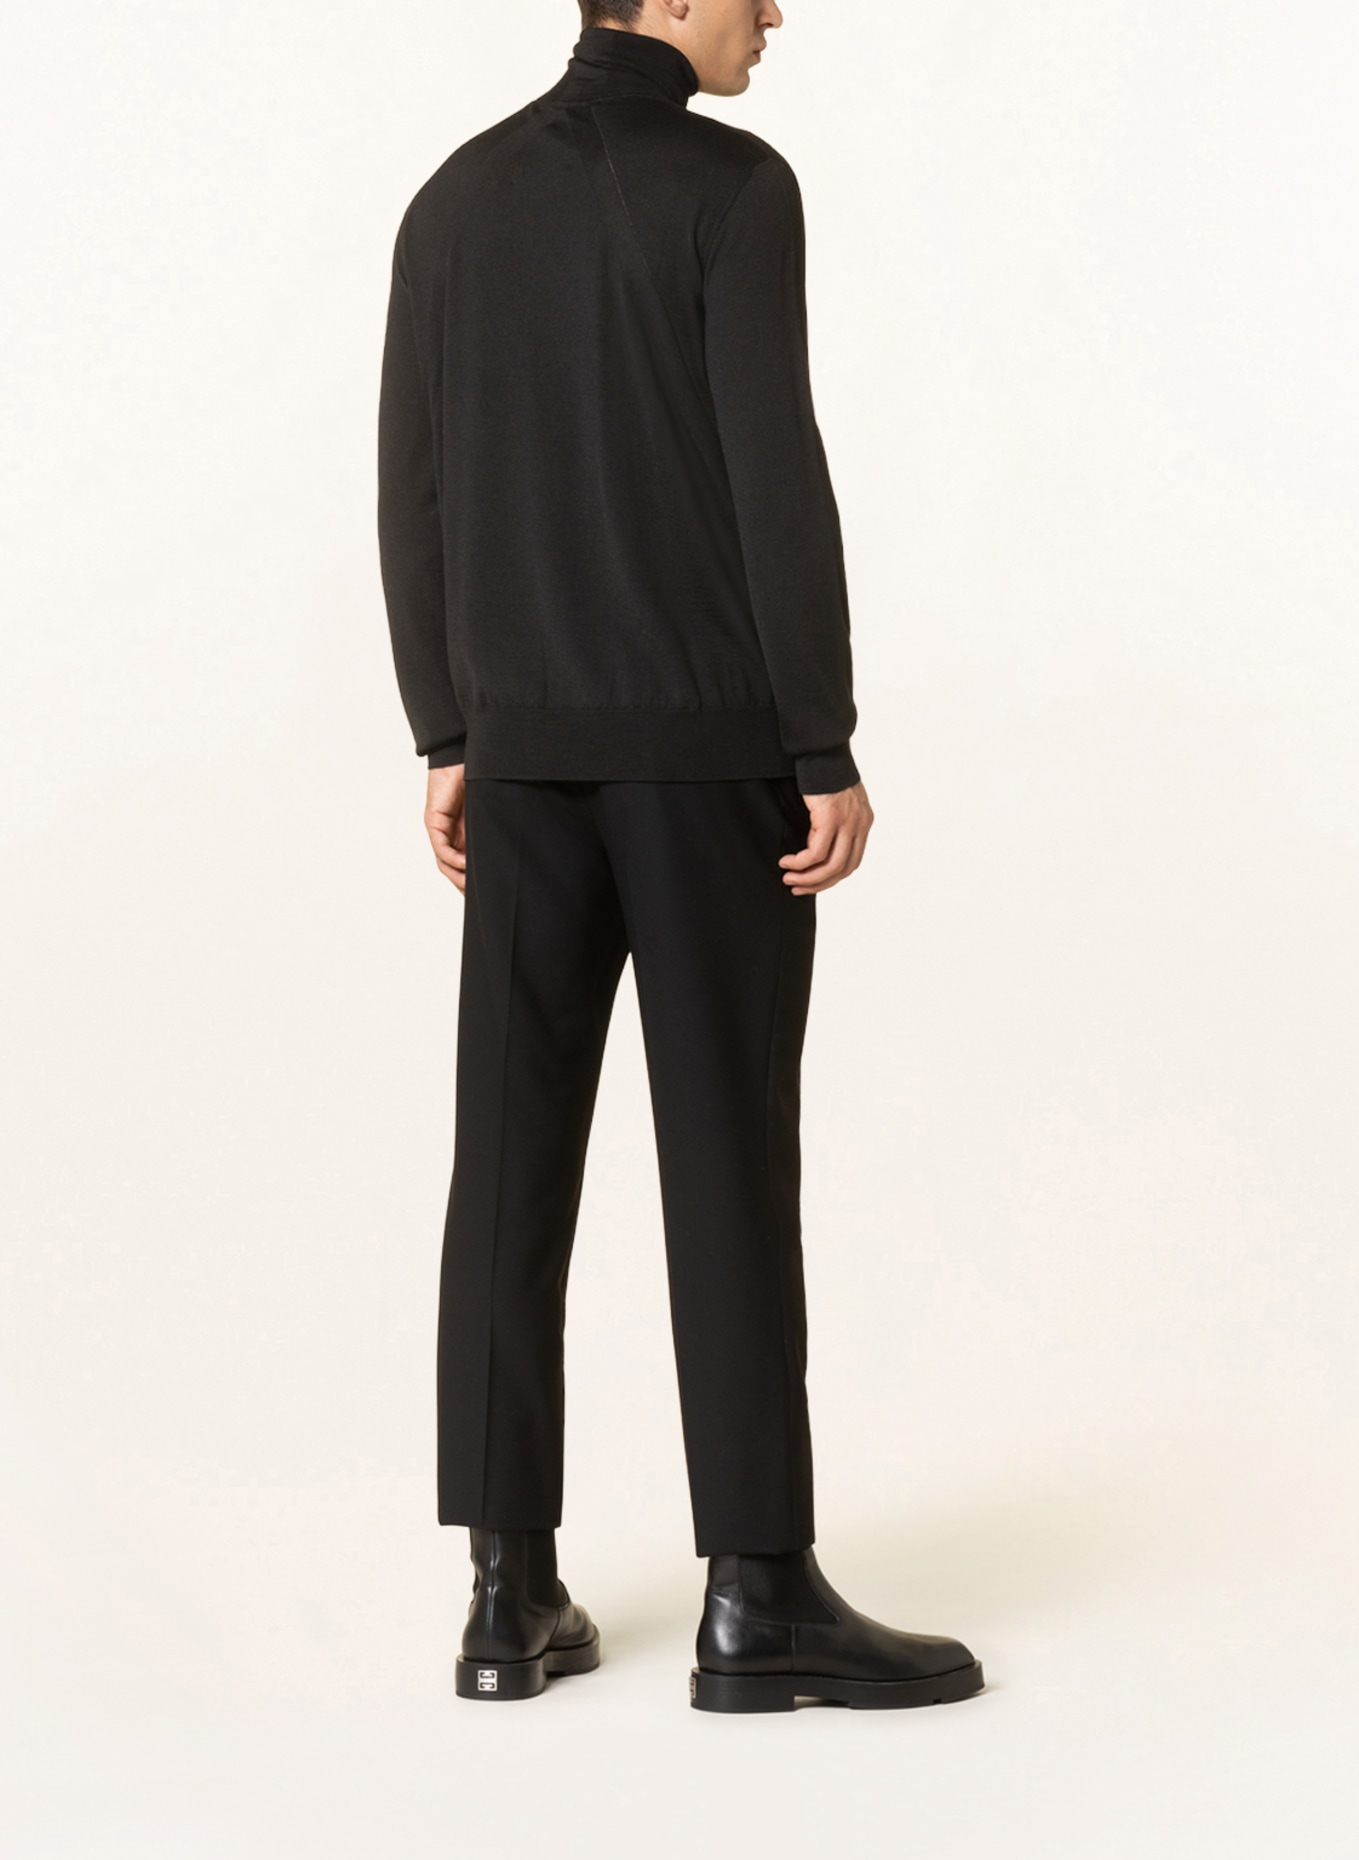 JIL SANDER Turtleneck sweater, Color: BLACK (Image 3)